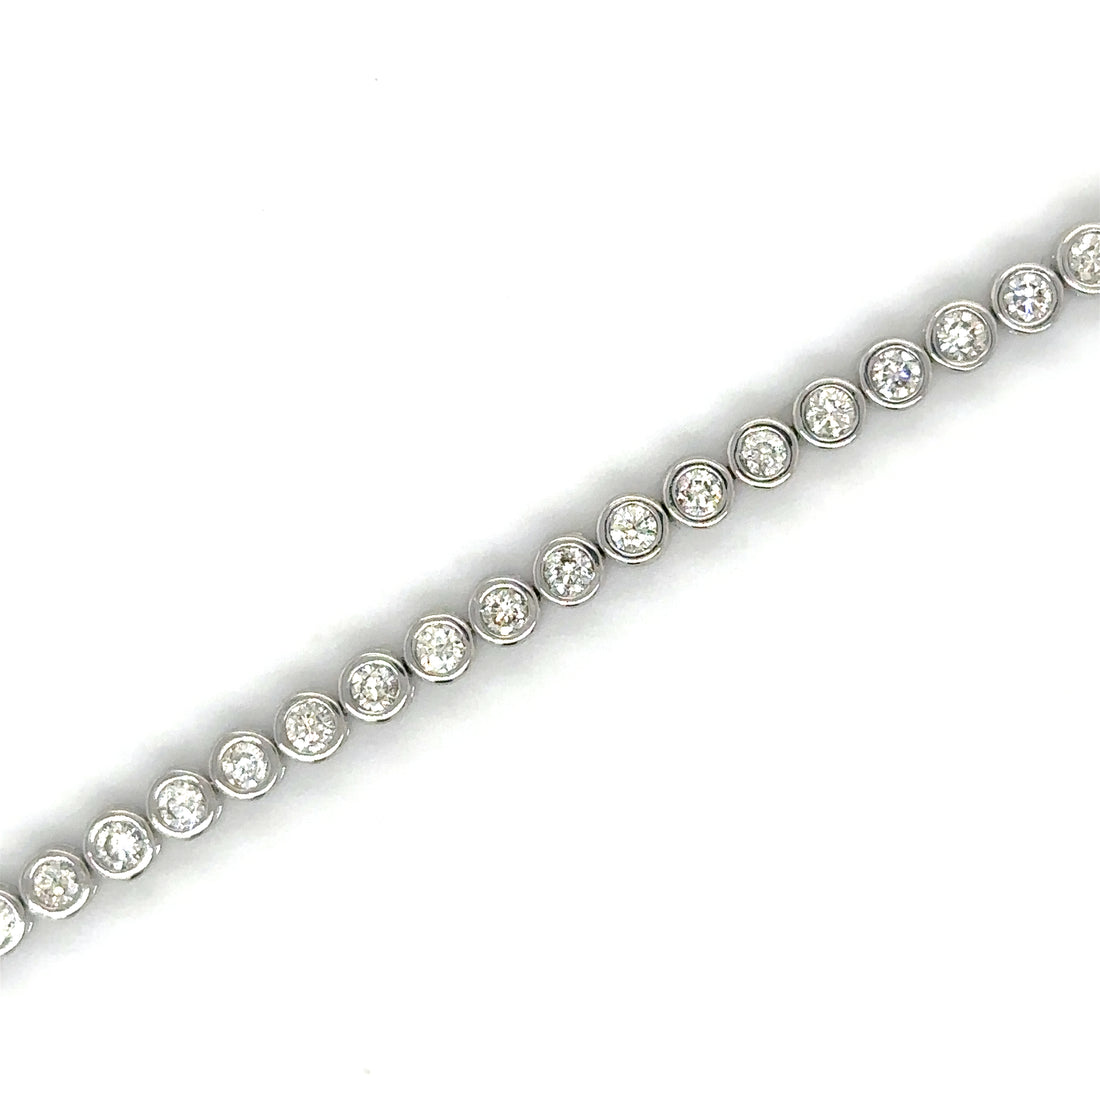 Diamond Bezel Tennis Bracelet